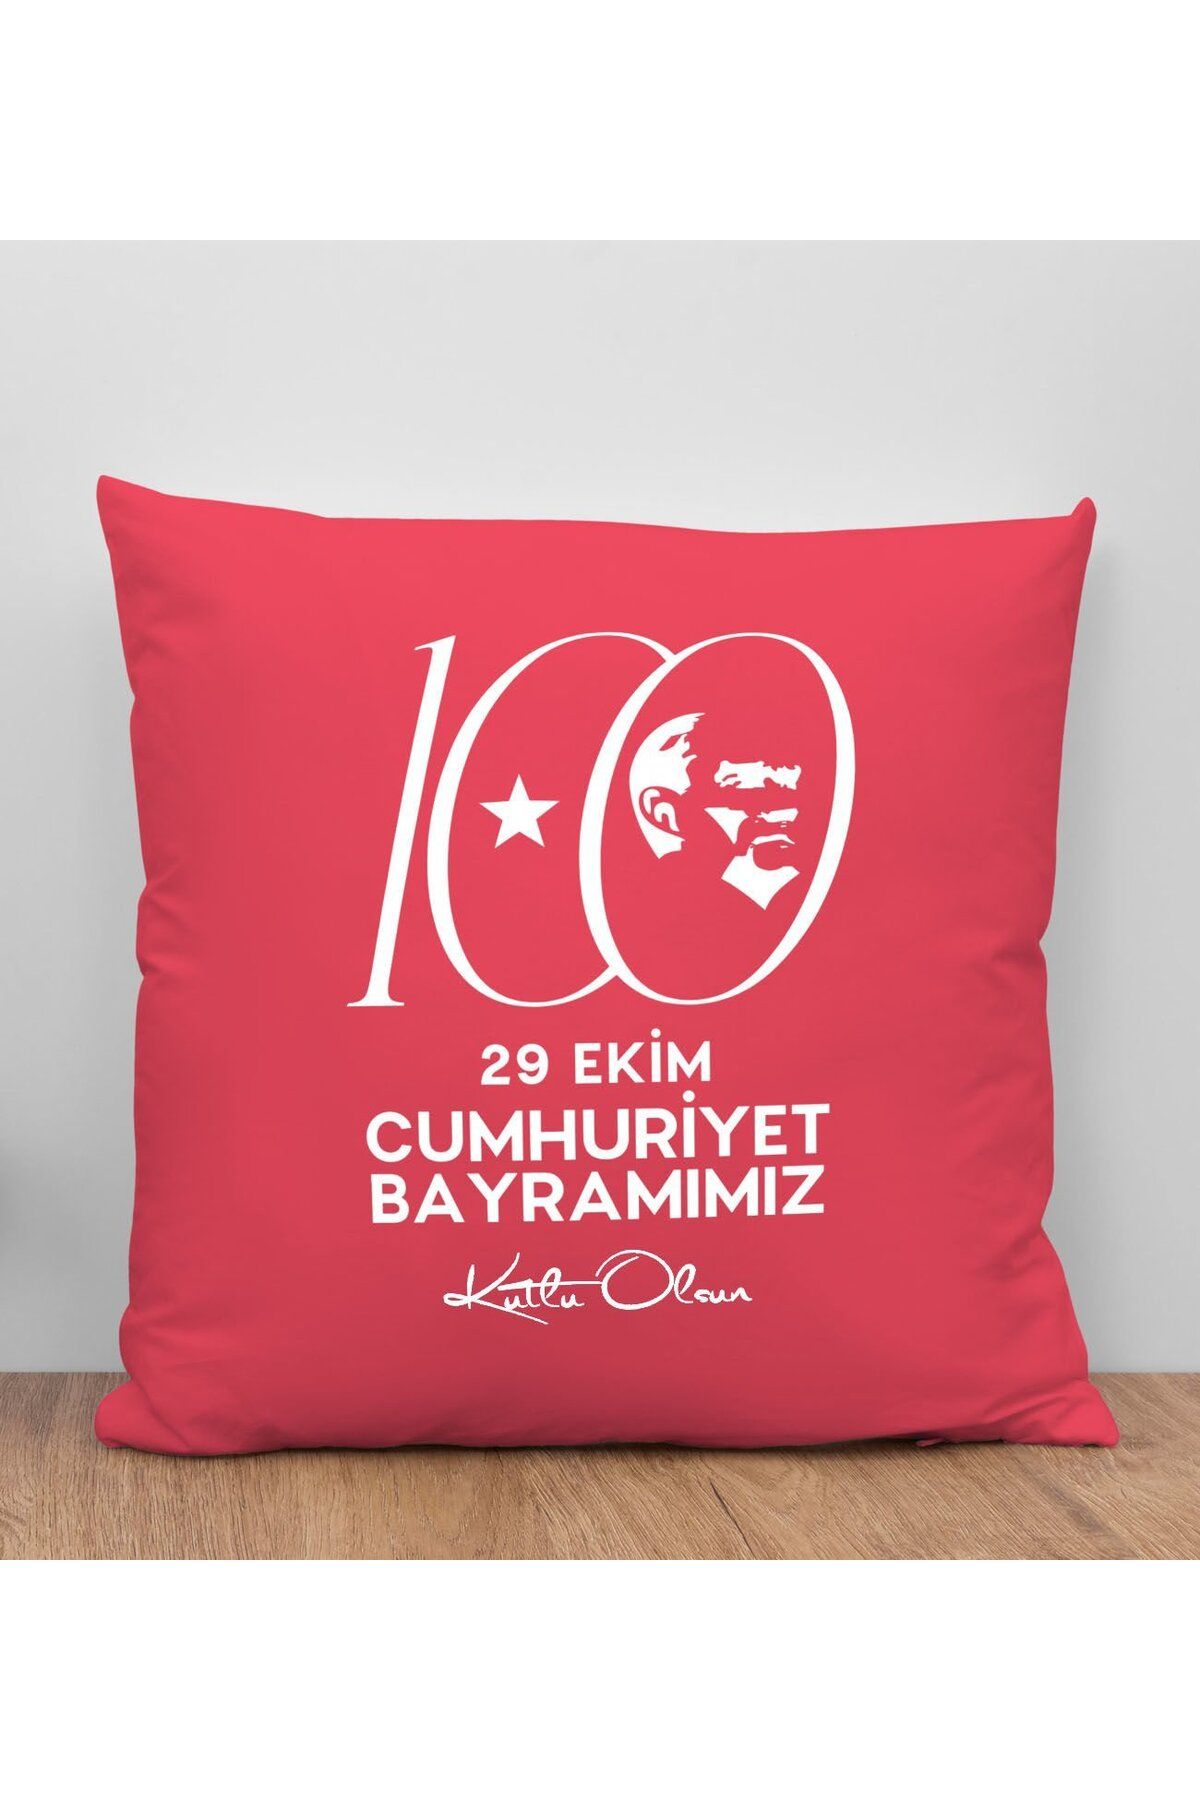 Bk Gift 100. Yıl Hatırası Premium Kumaş Kırmızı Kırlent Yastık-3, 29 Ekim Hediyesi, Cumhuriyet Bayra